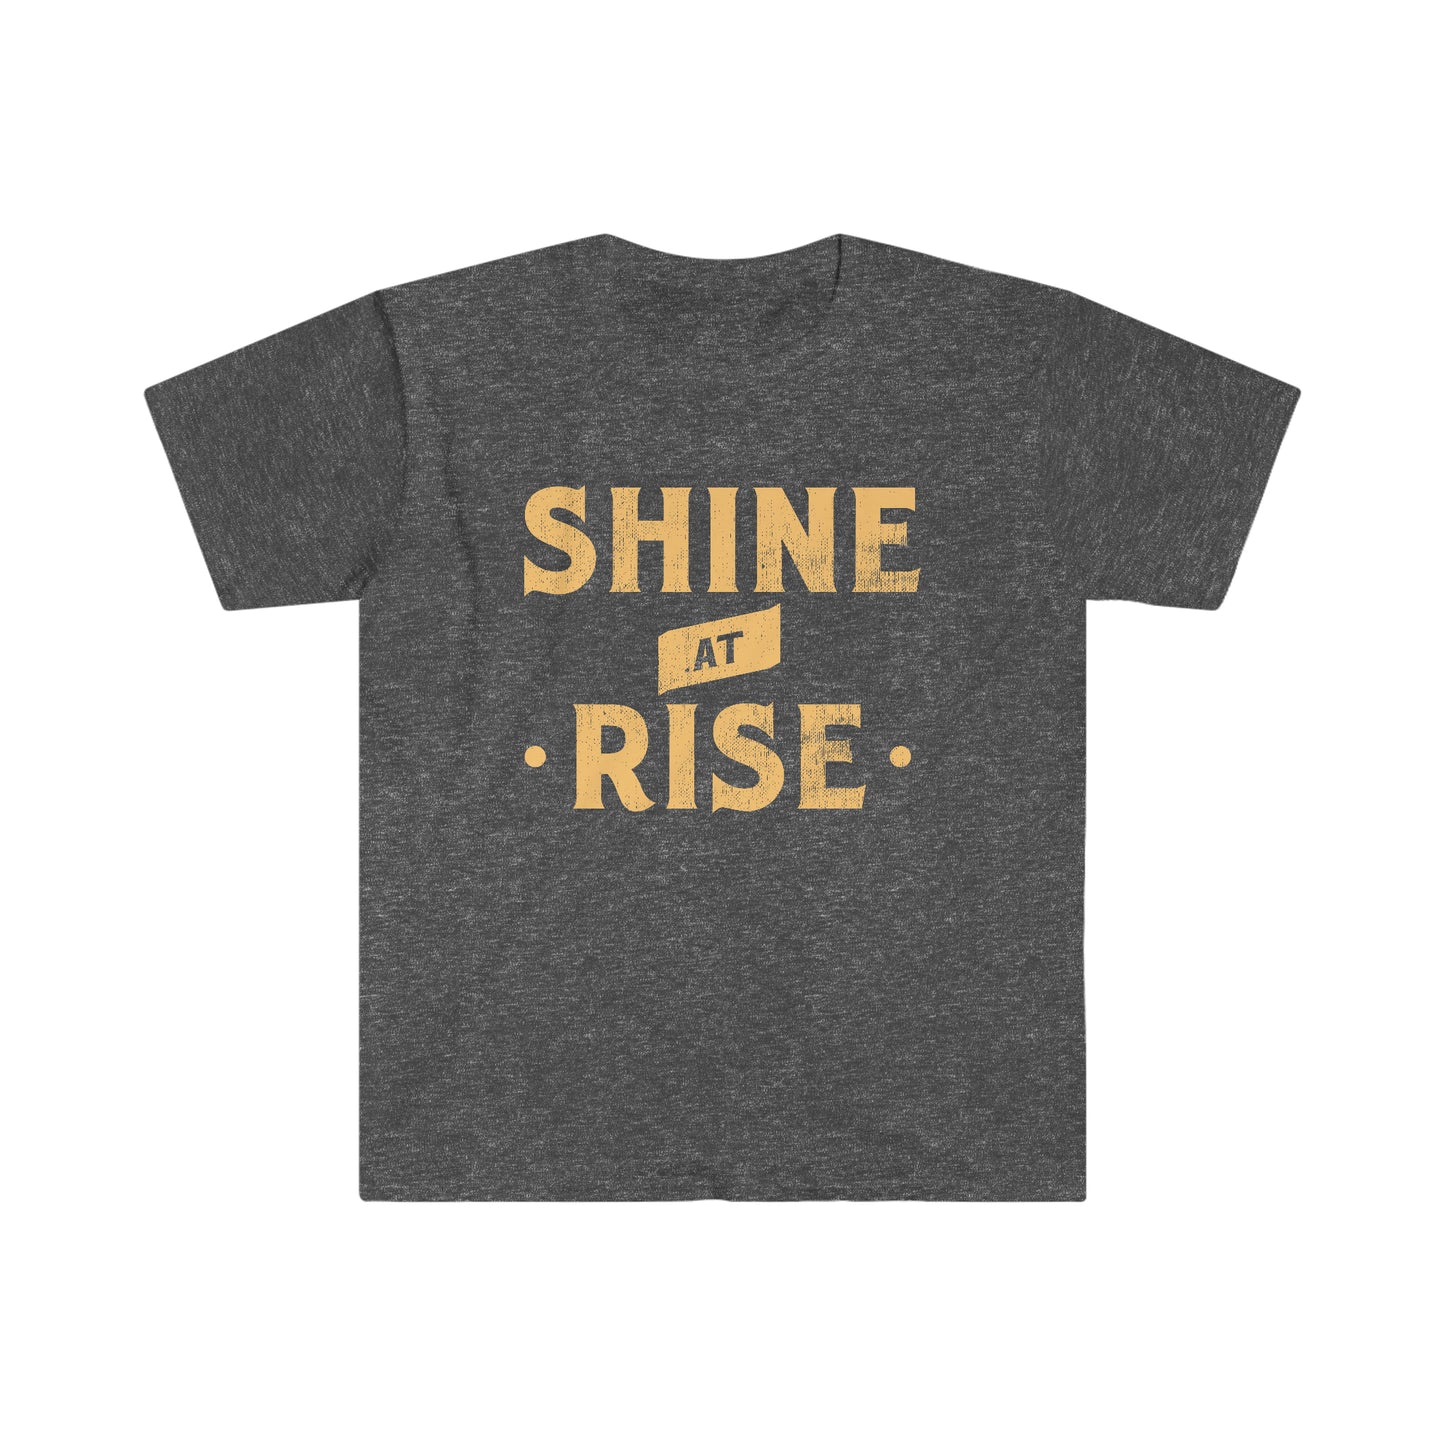 Shine at Rise - Unisex Softstyle T-Shirt - Dark Heather